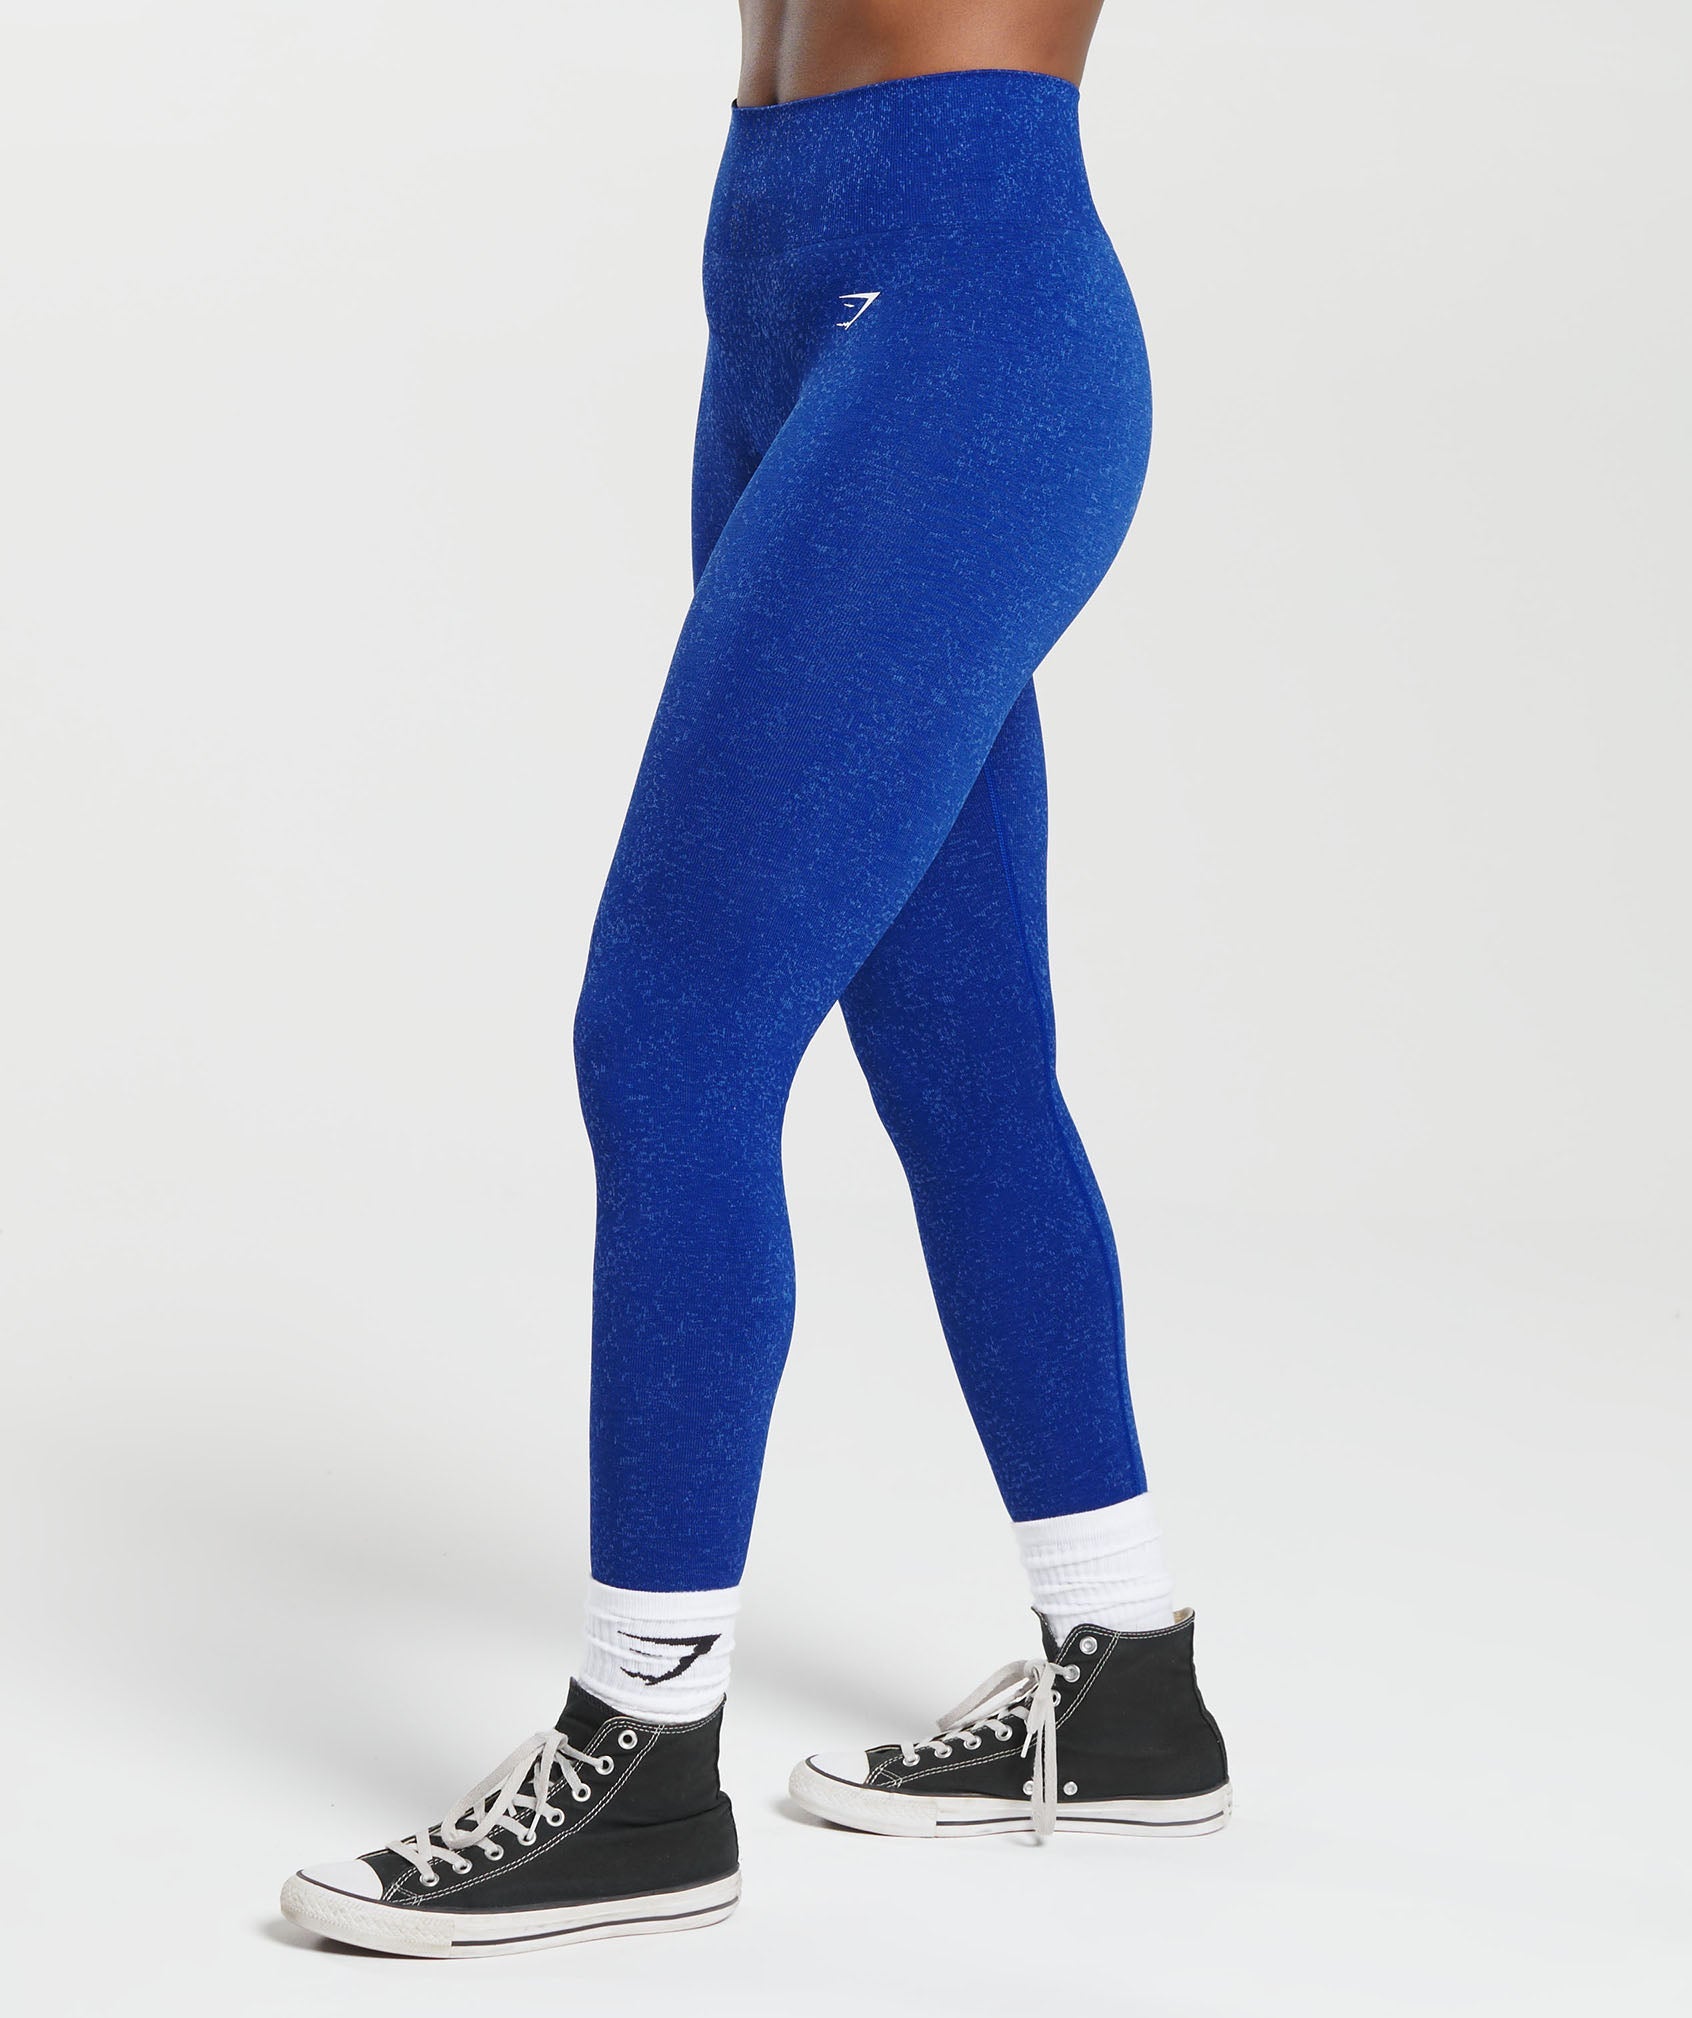 Gymshark Women's Adapt Marl Seamless Leggings JM3 Lakeside Blue